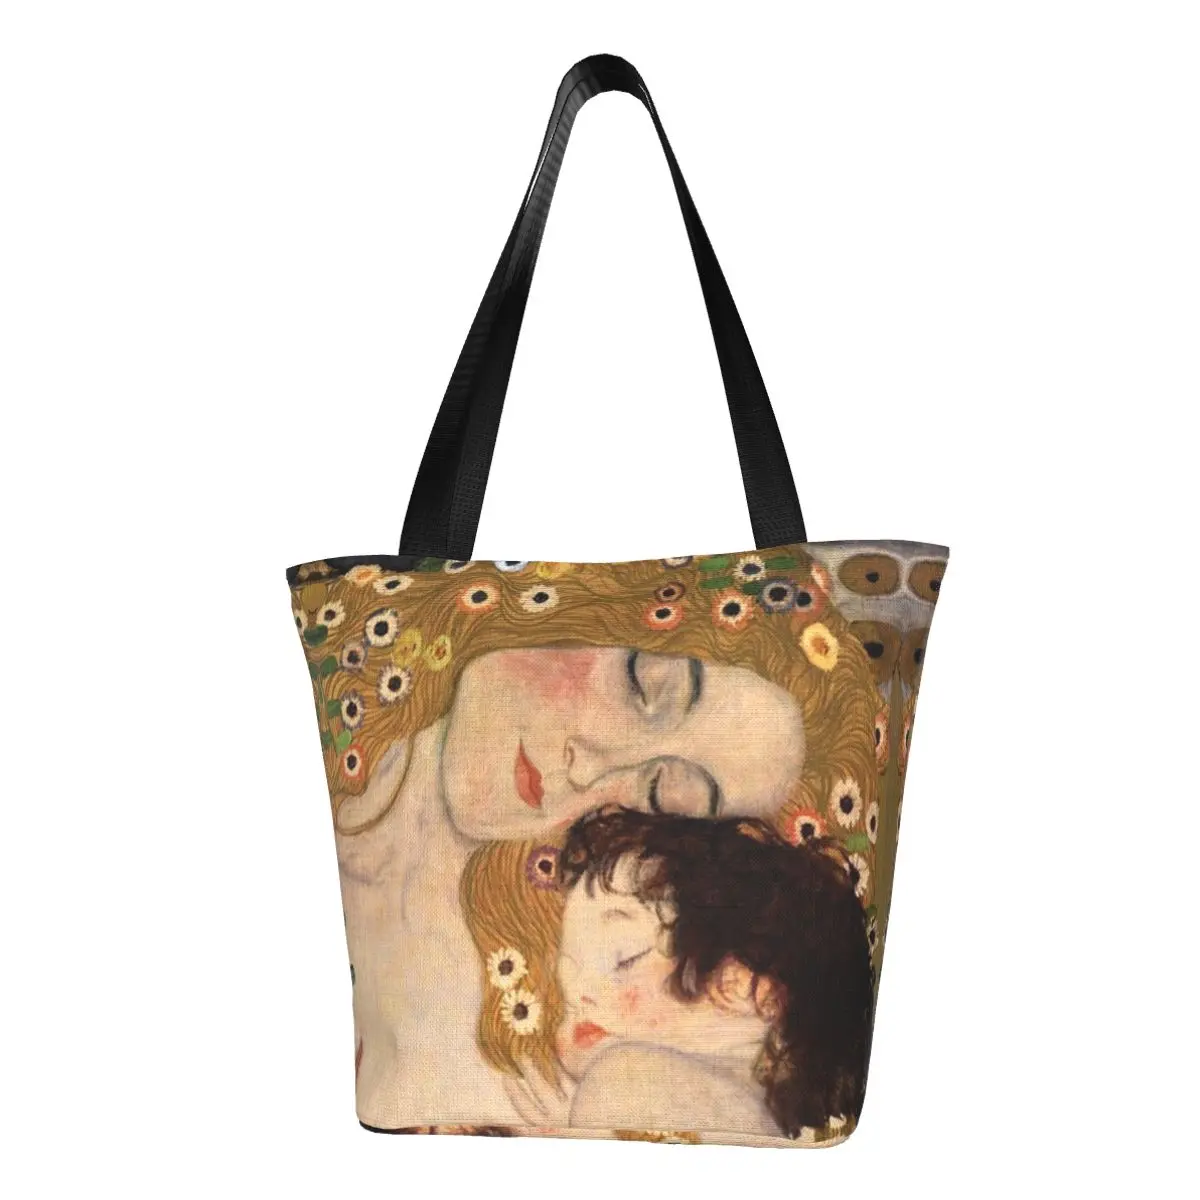 Переработка женской сумки для покупок трех возрастов, женская холщовая сумка-тоут на плечо, картины Густава Климта, сумки для покупок в продуктовых магазинах